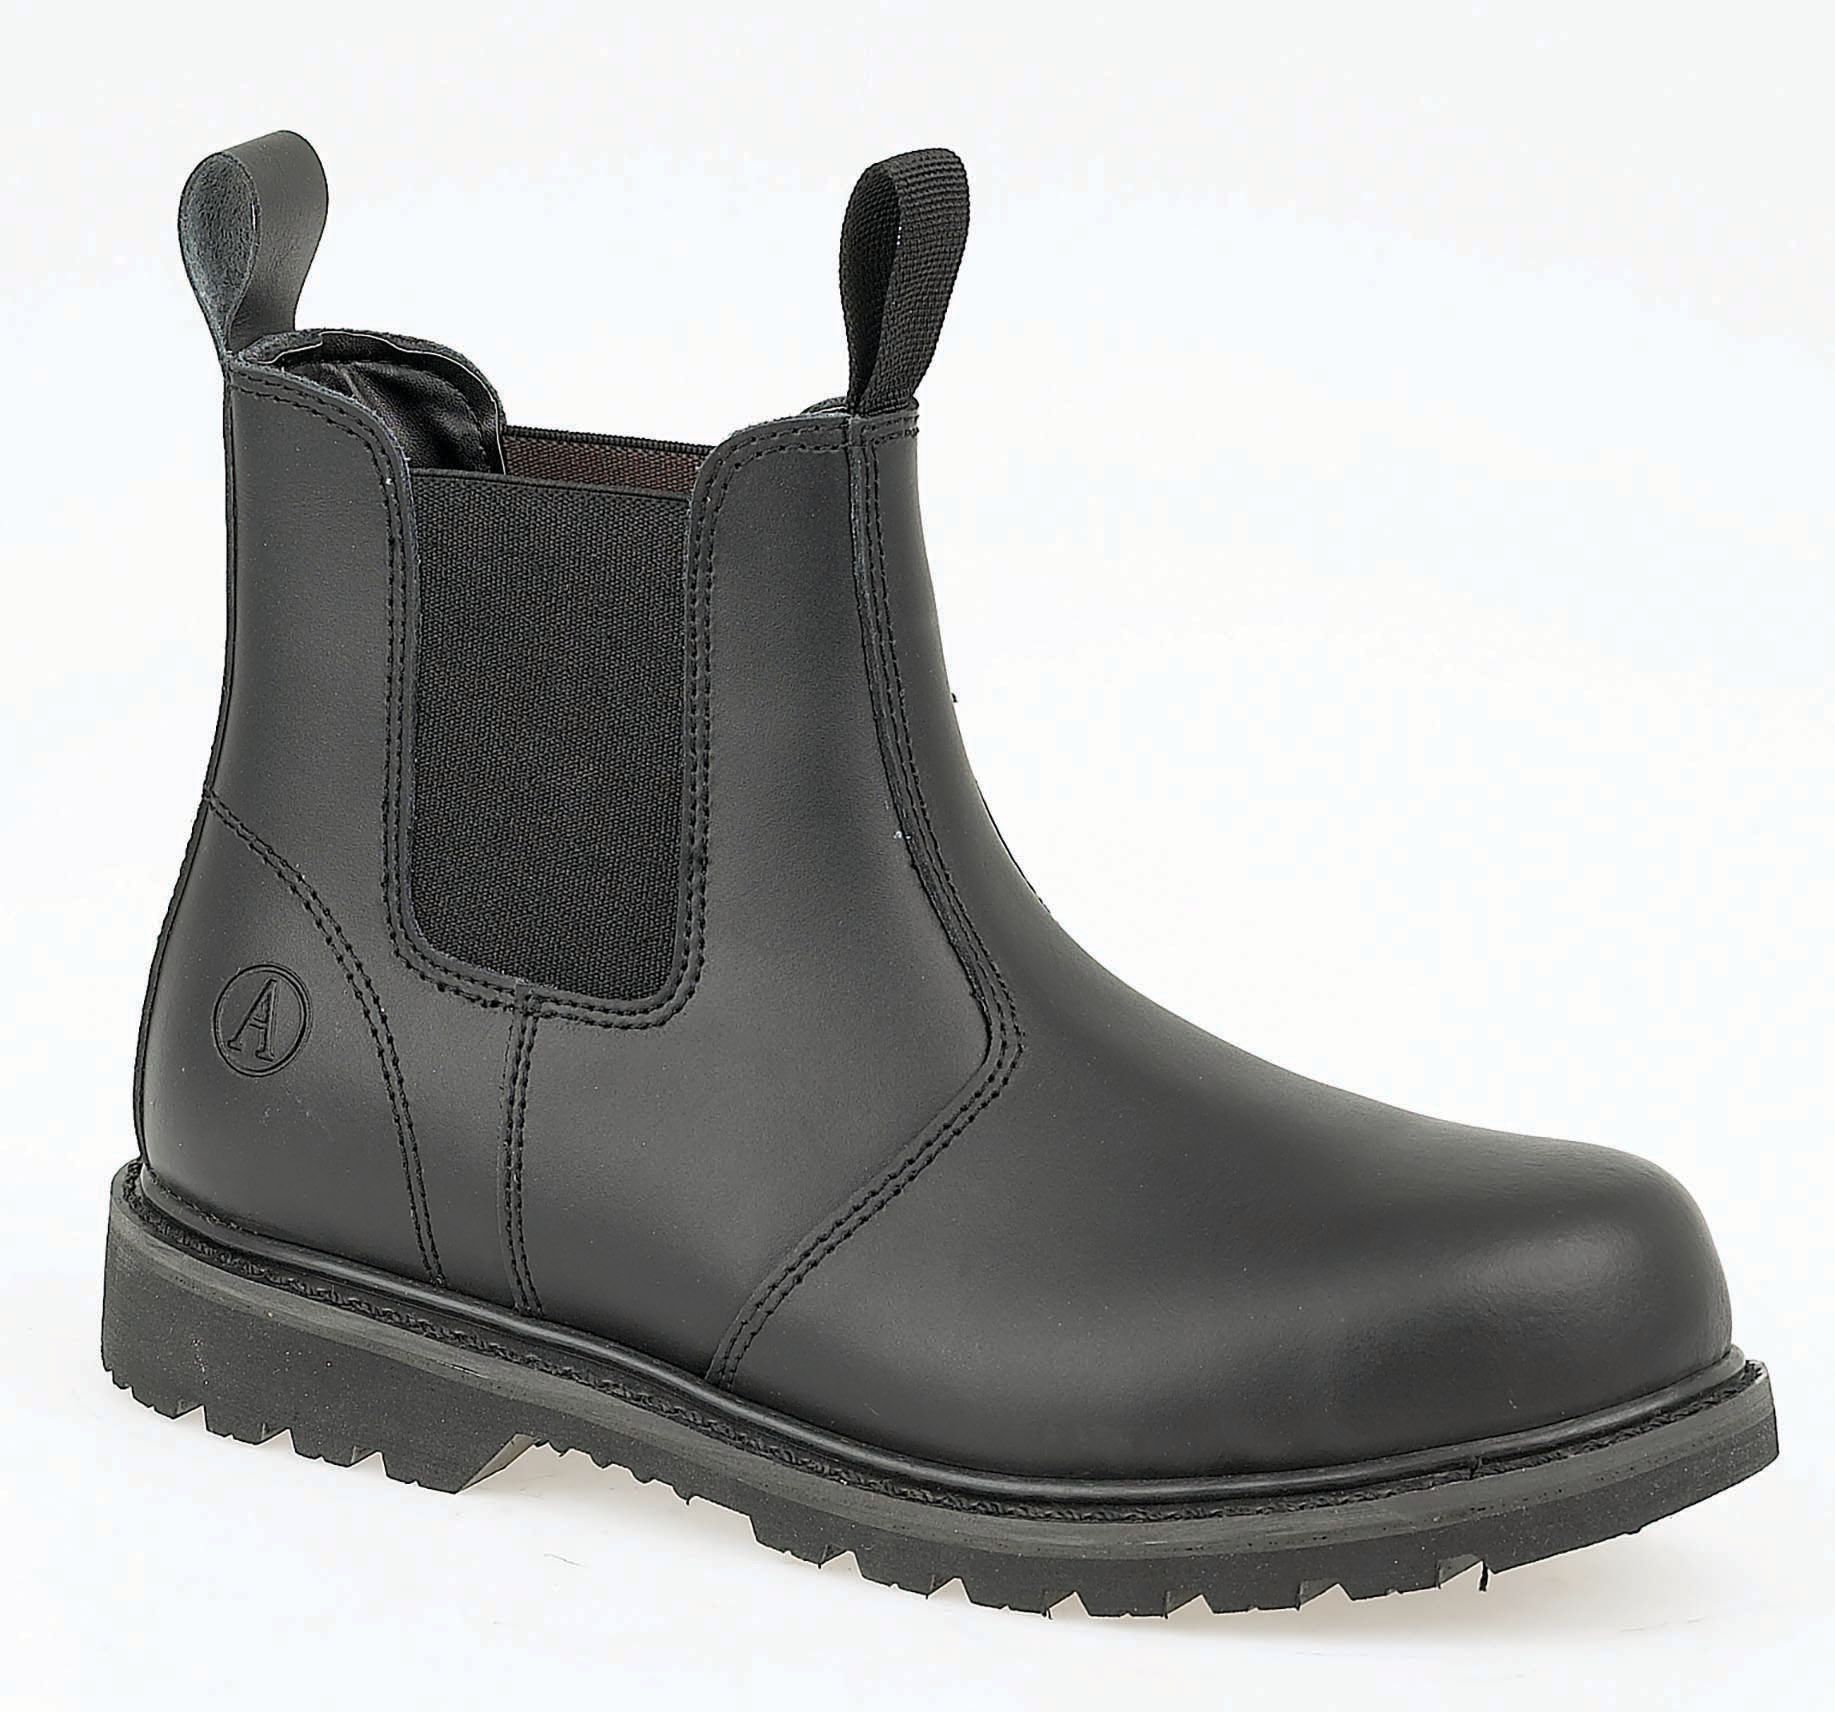 Image of Amblers Safety FS5 Dealer Safety Boot - Black Size 11